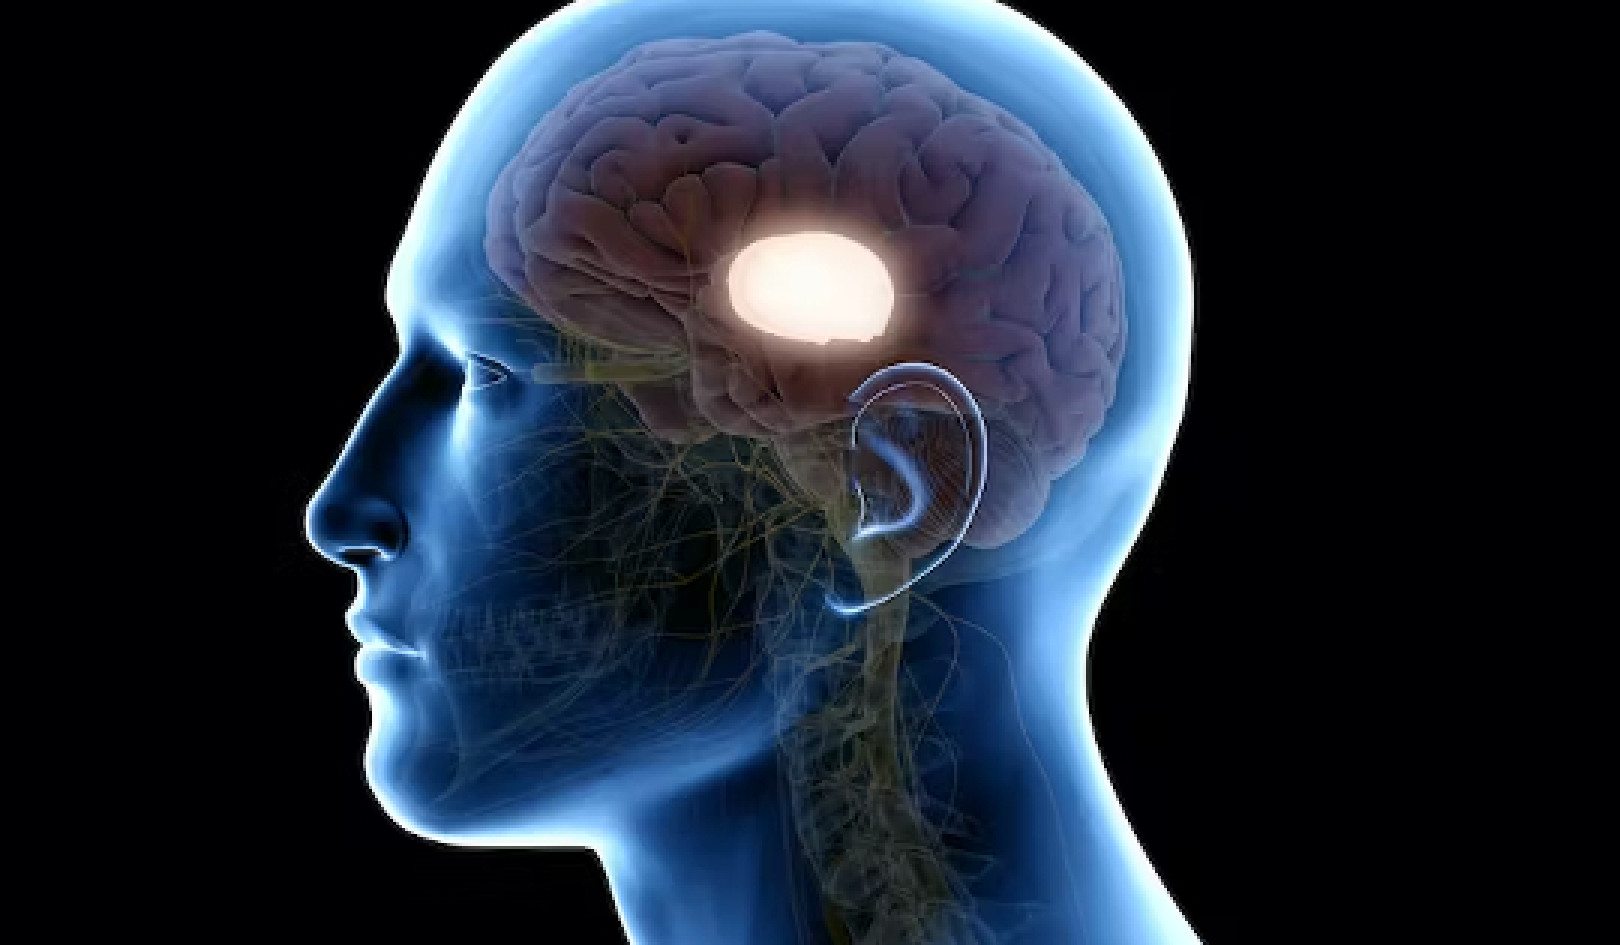 Wstrząs mózgu: prawie 50% nadal ma uraz mózgu po 6 miesiącach